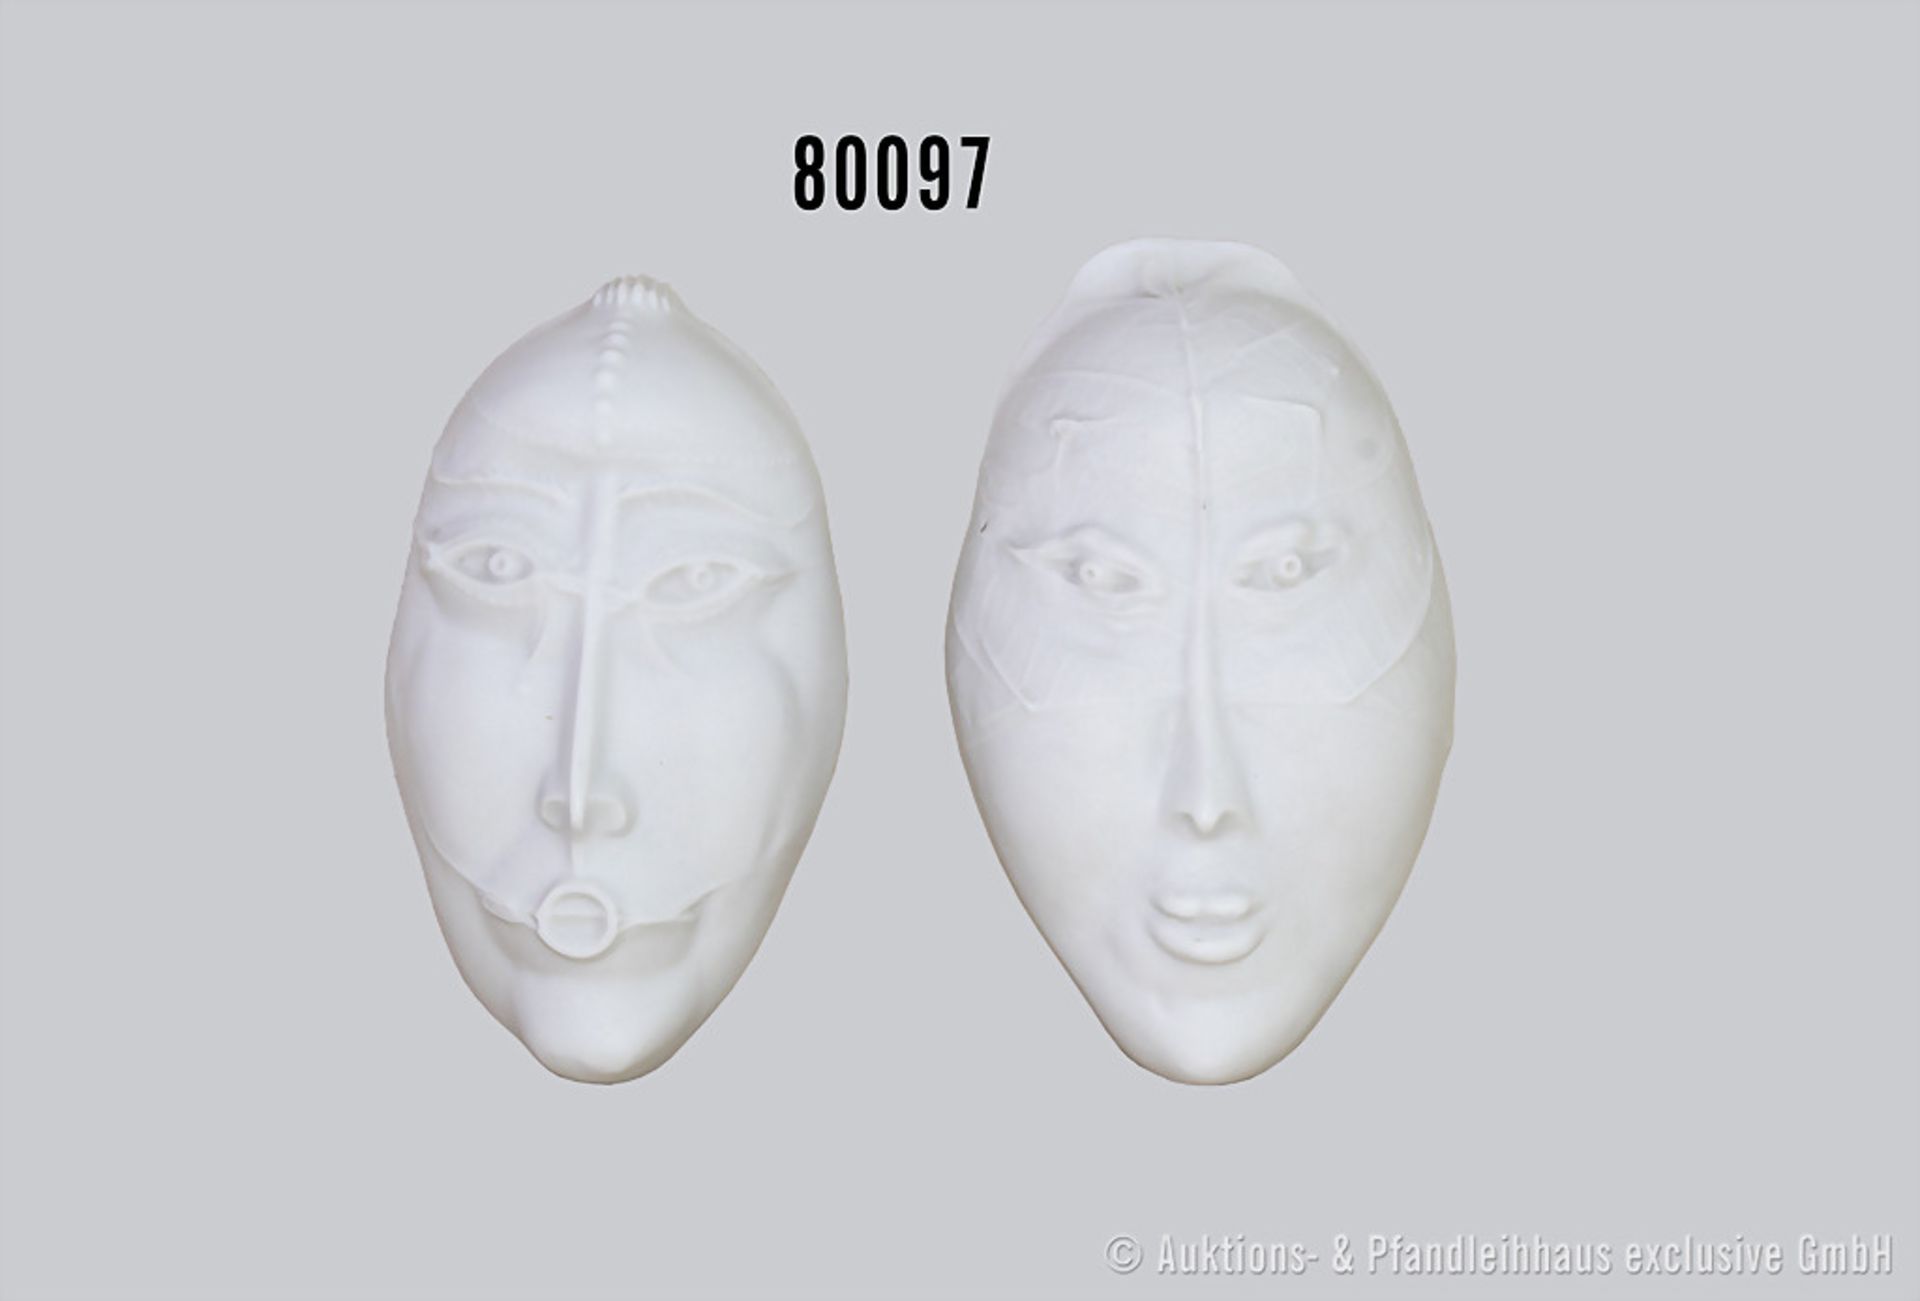 Konv. 2 Rosenthal Porzellan Masken, rückseitig offen, Künstler Paul Wunderlich, limit. Kunstreihen